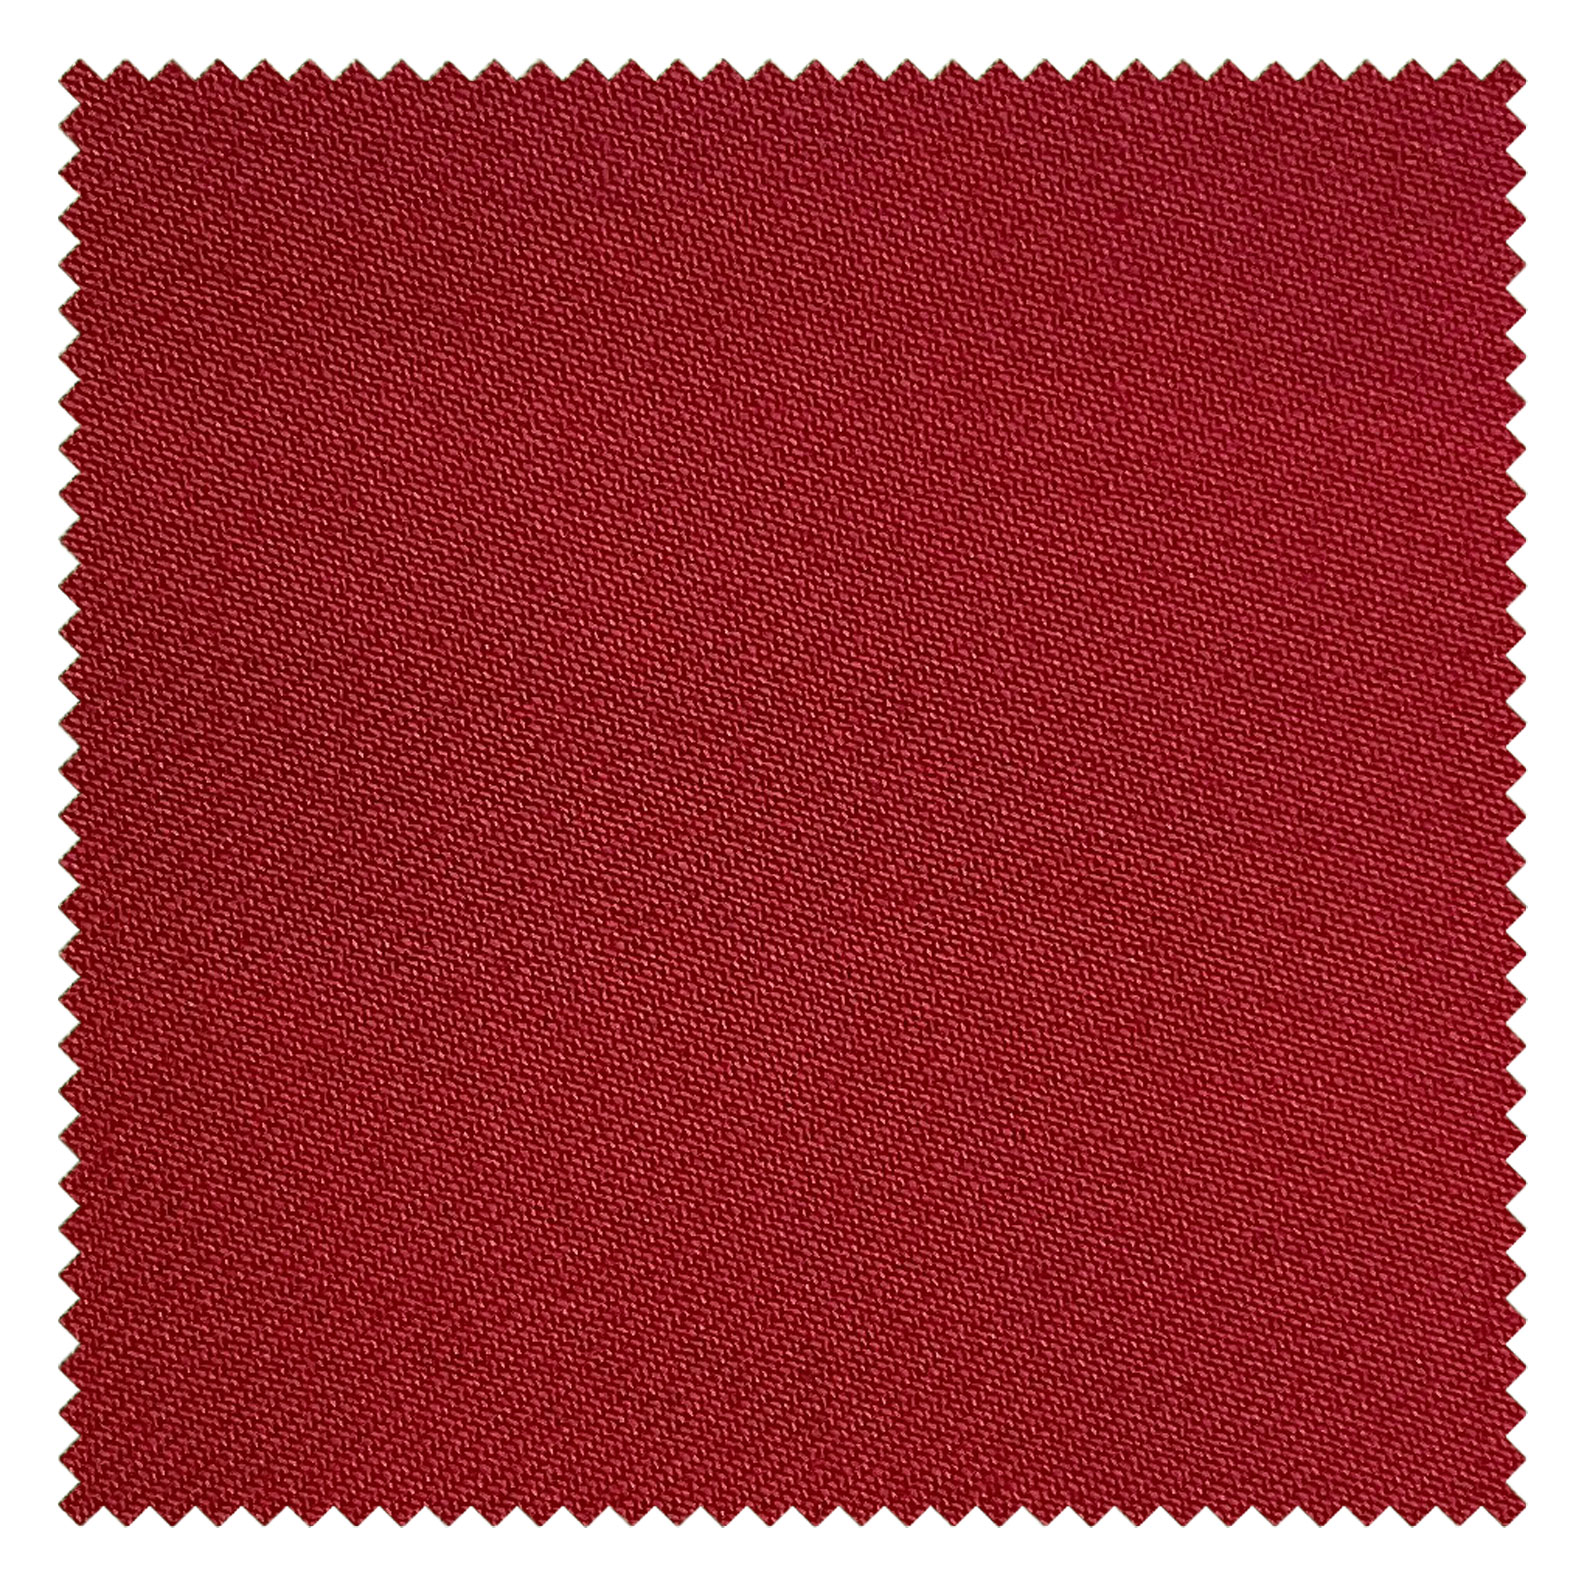 KINGMAN Cashmere Wool Fabric Royal Elegant RED ผ้าตัดชุดสูท สีแดง กางเกง ผู้ชาย ผ้าตัดเสื้อ ยูนิฟอร์ม ผ้าวูล ผ้าคุณภาพดี กว้าง 60 นิ้ว ยาว 1 เมตร